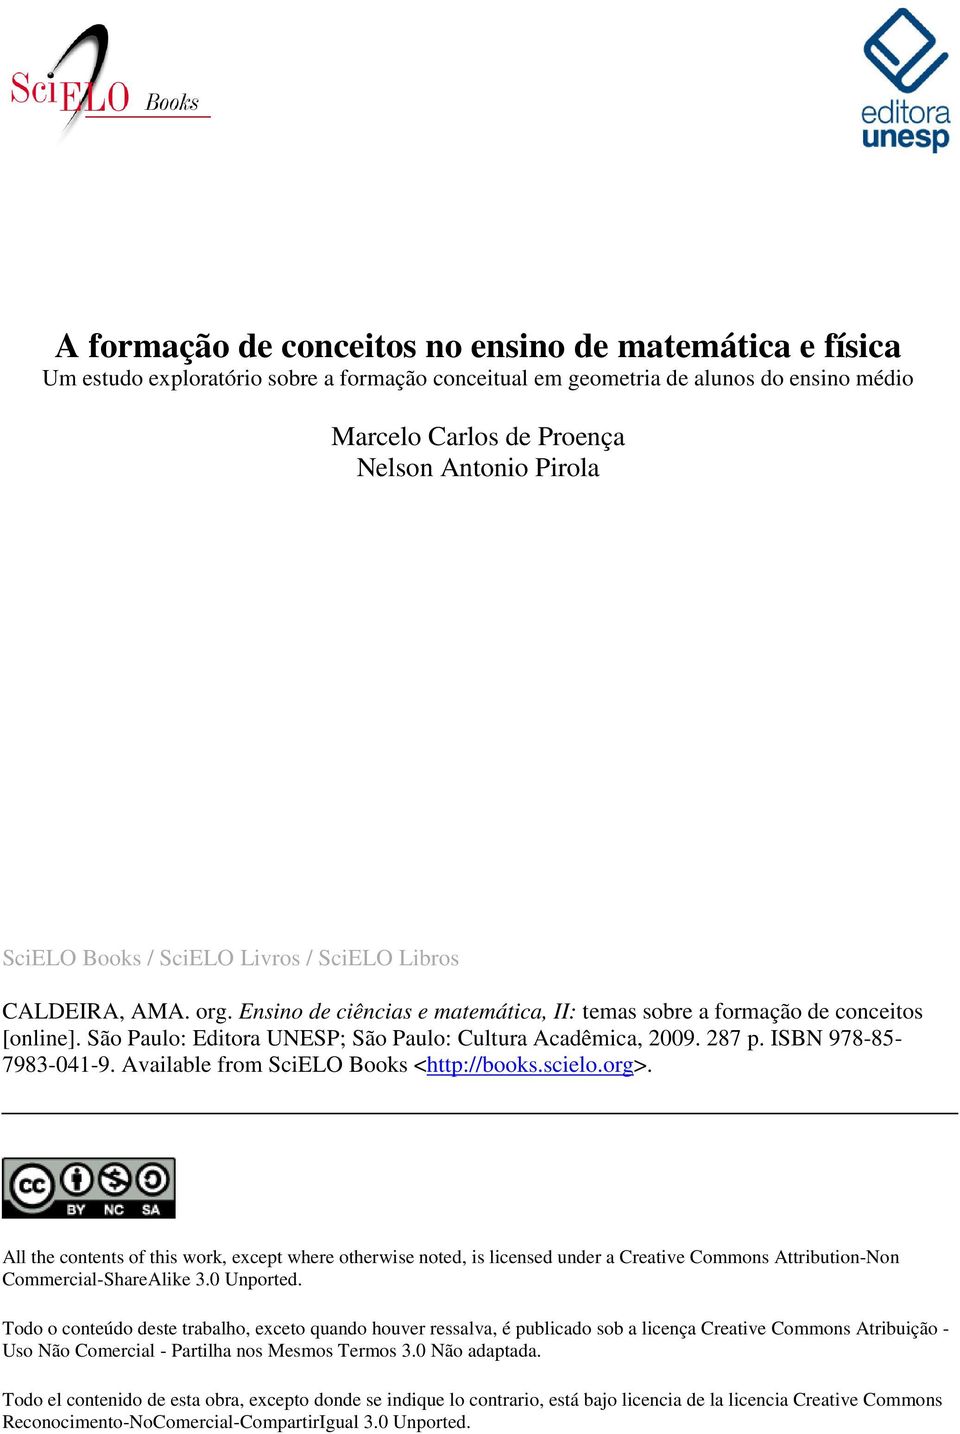 São Paulo: Editora UNESP; São Paulo: Cultura Acadêmica, 2009. 287 p. ISBN 978-85- 7983-041-9. Available from SciELO Books <http://books.scielo.org>.